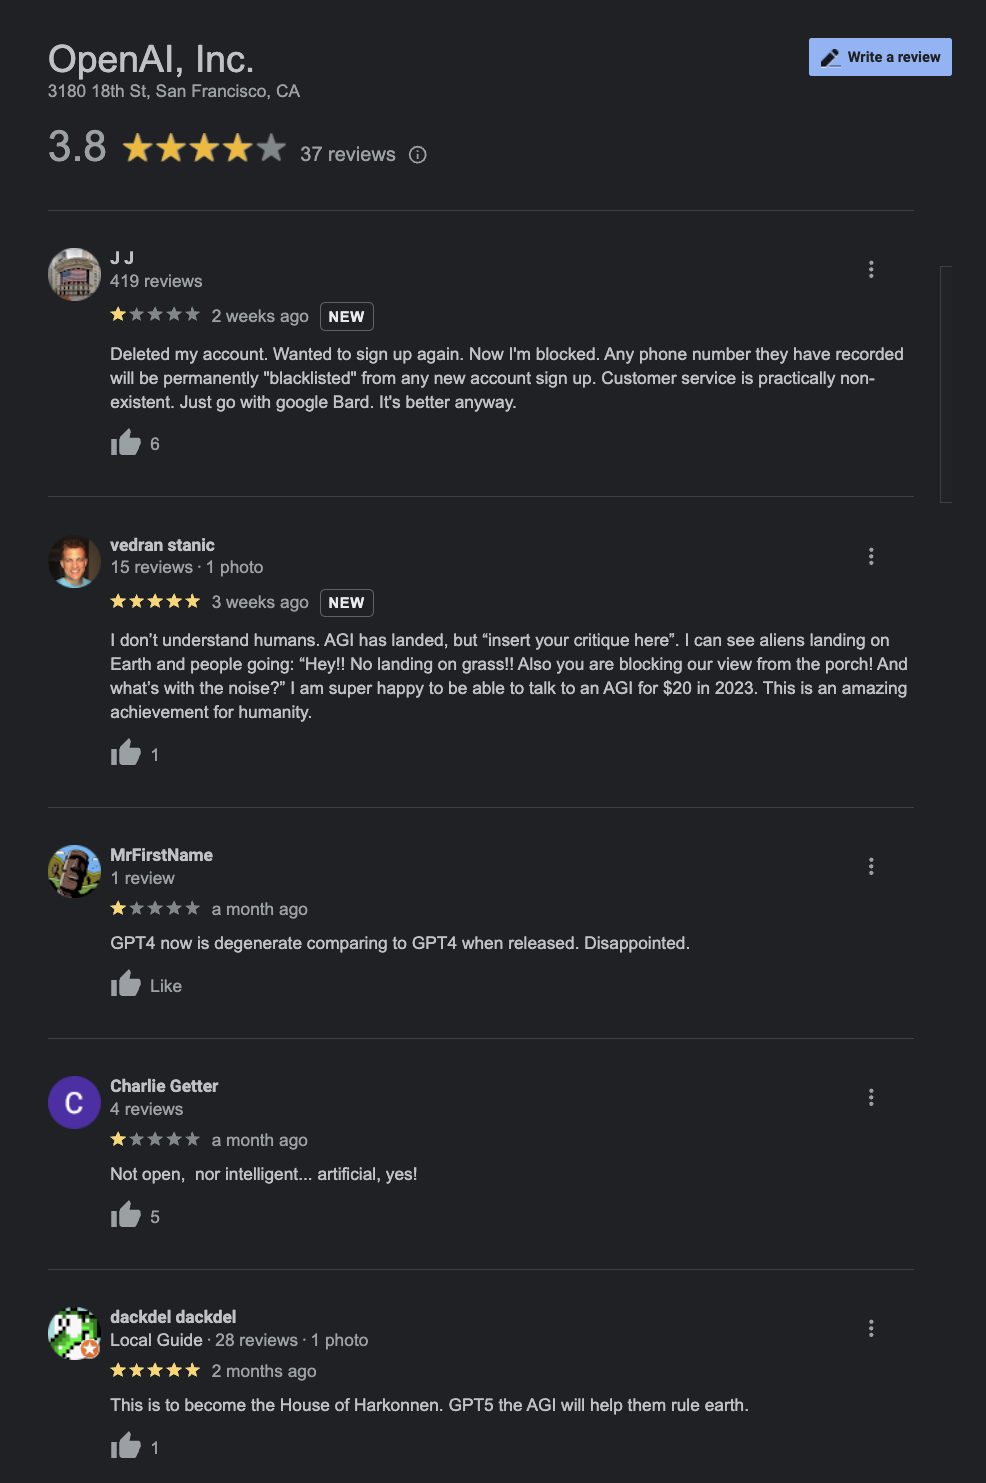 openai google reviews star rating 